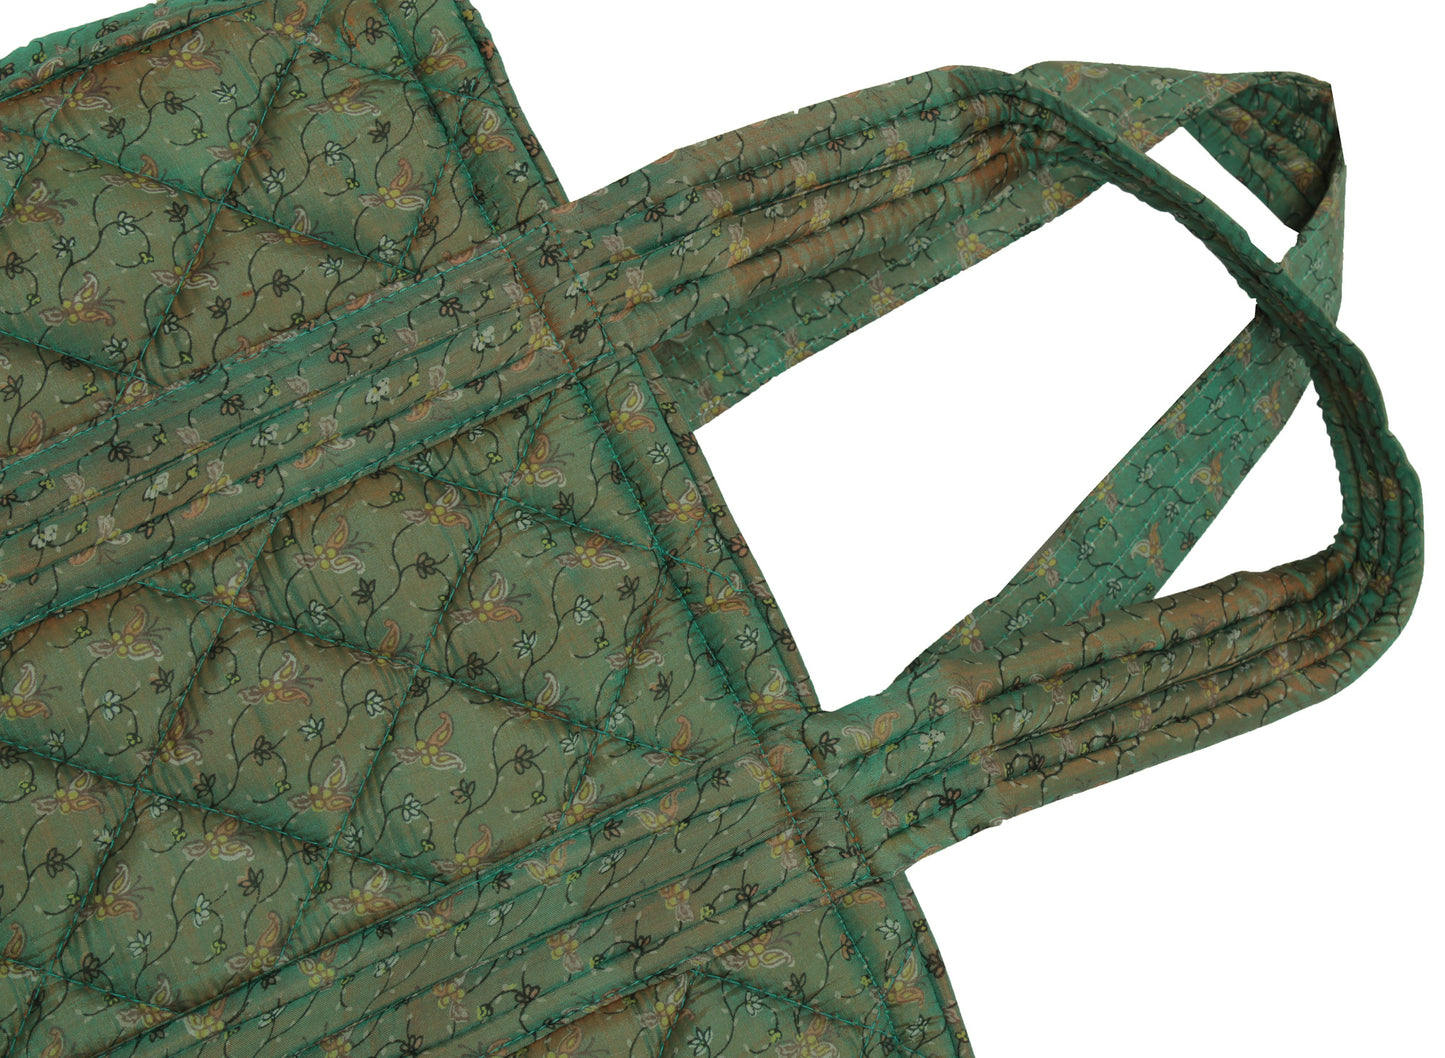 Sushila Vintage Green Tote Bag 100% Pure Silk Printed Handbag Shoulder Bag